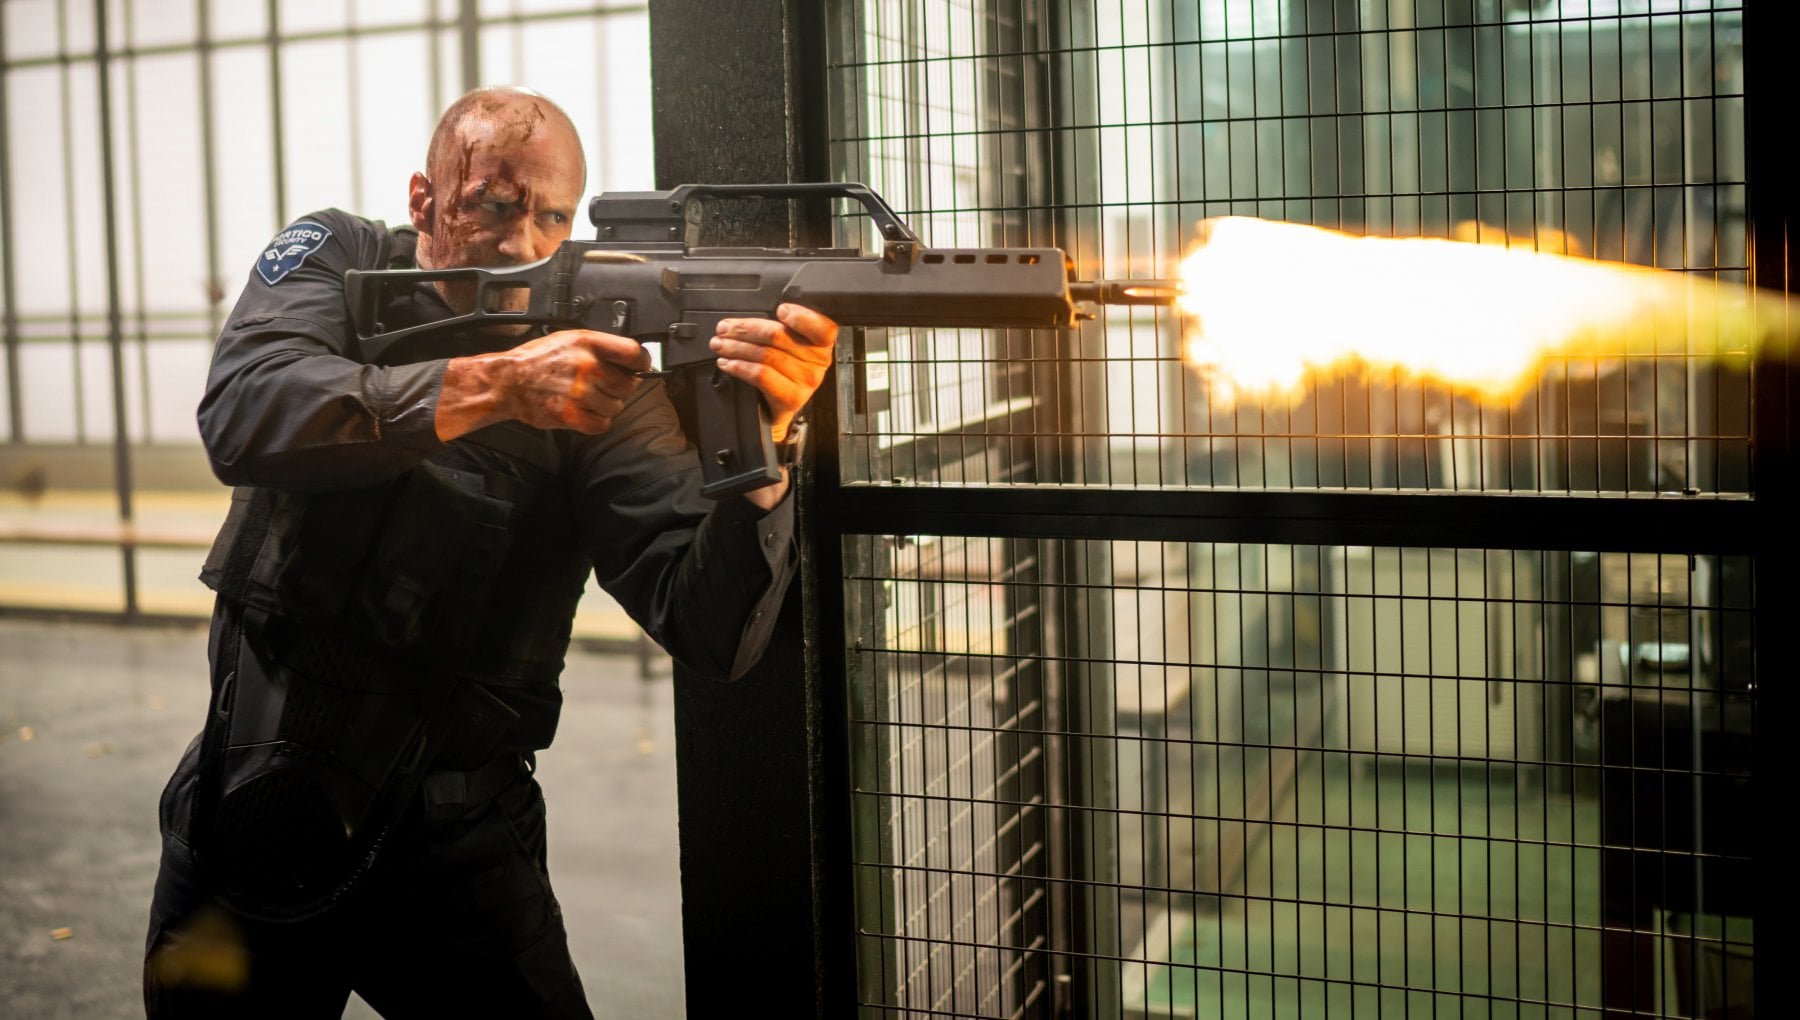 La furia di un uomo - Wrath of Man: trama e cast del film con Jason Statham